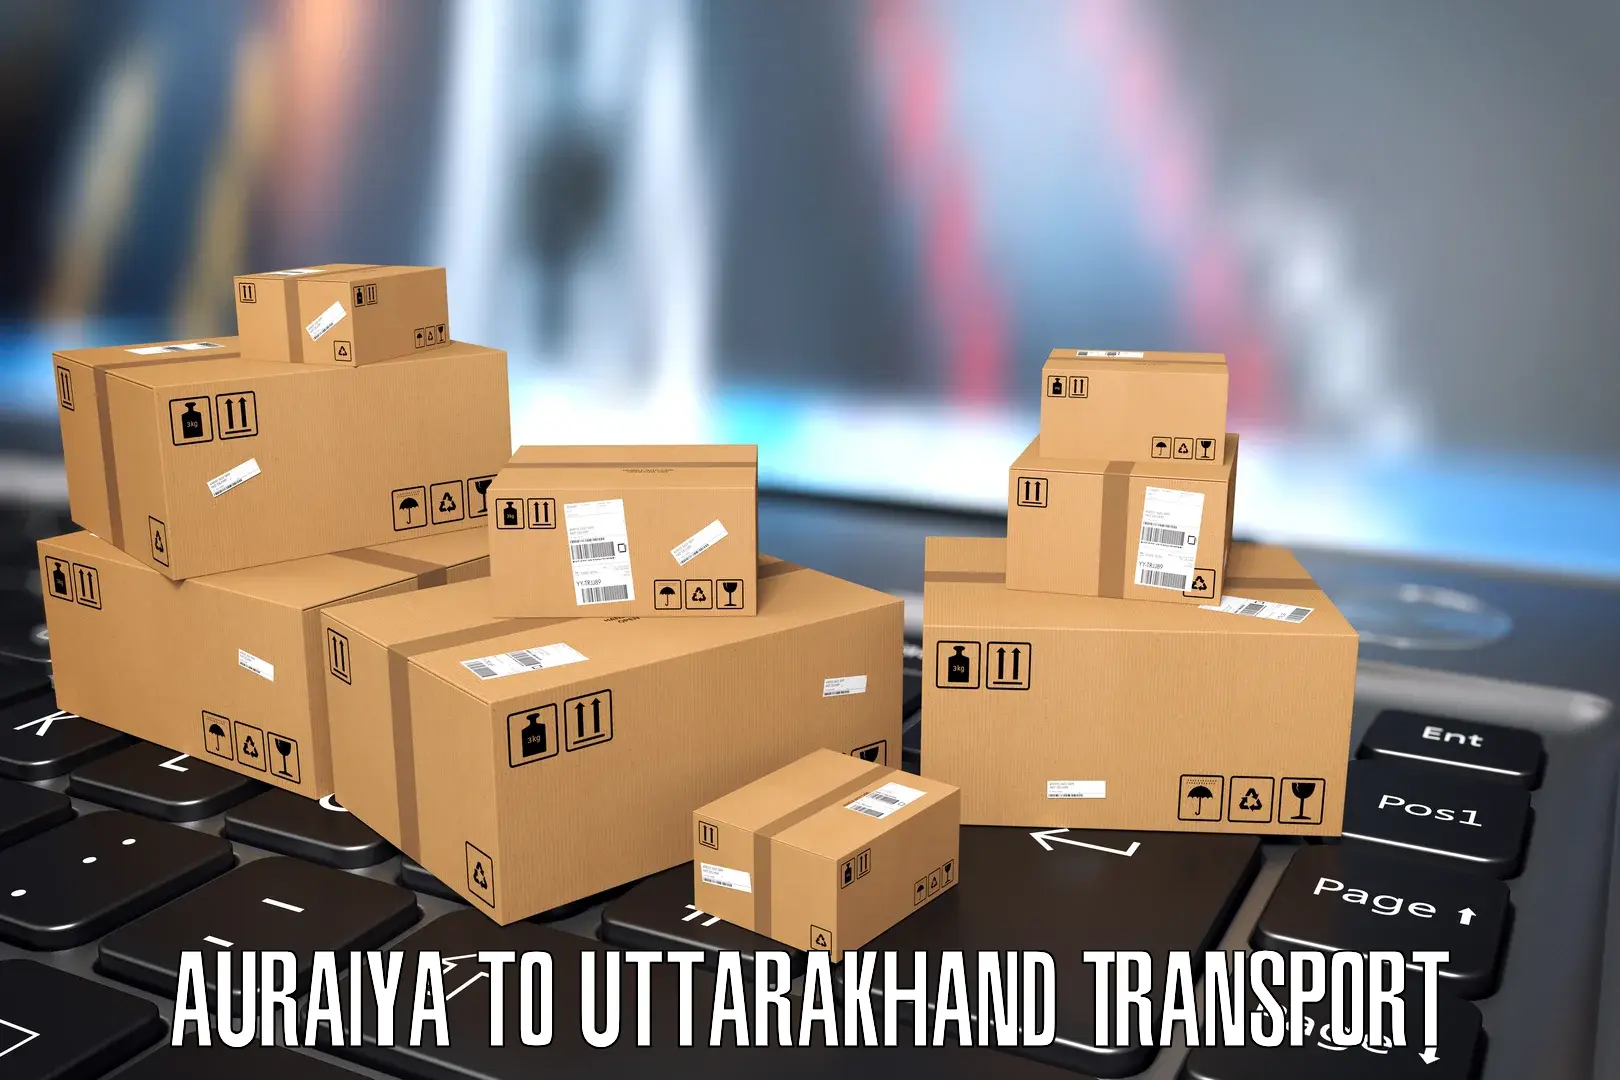 Land transport services in Auraiya to IIT Roorkee